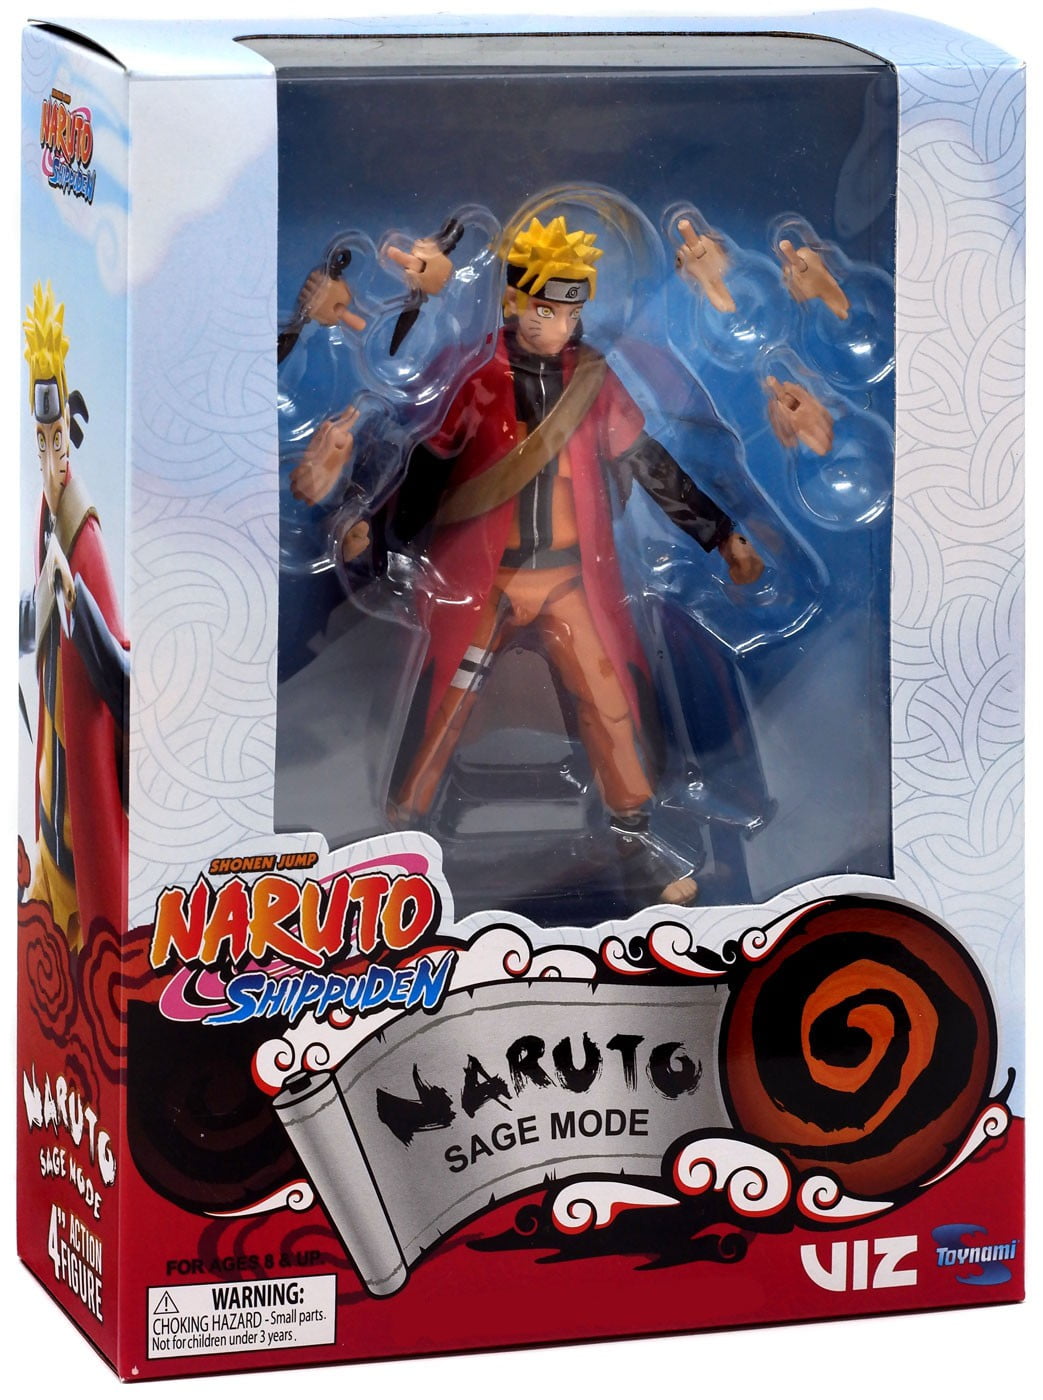 Naruto Shippuden Naruto Sage Mode Action Figure - Walmart.com - Walmart.com